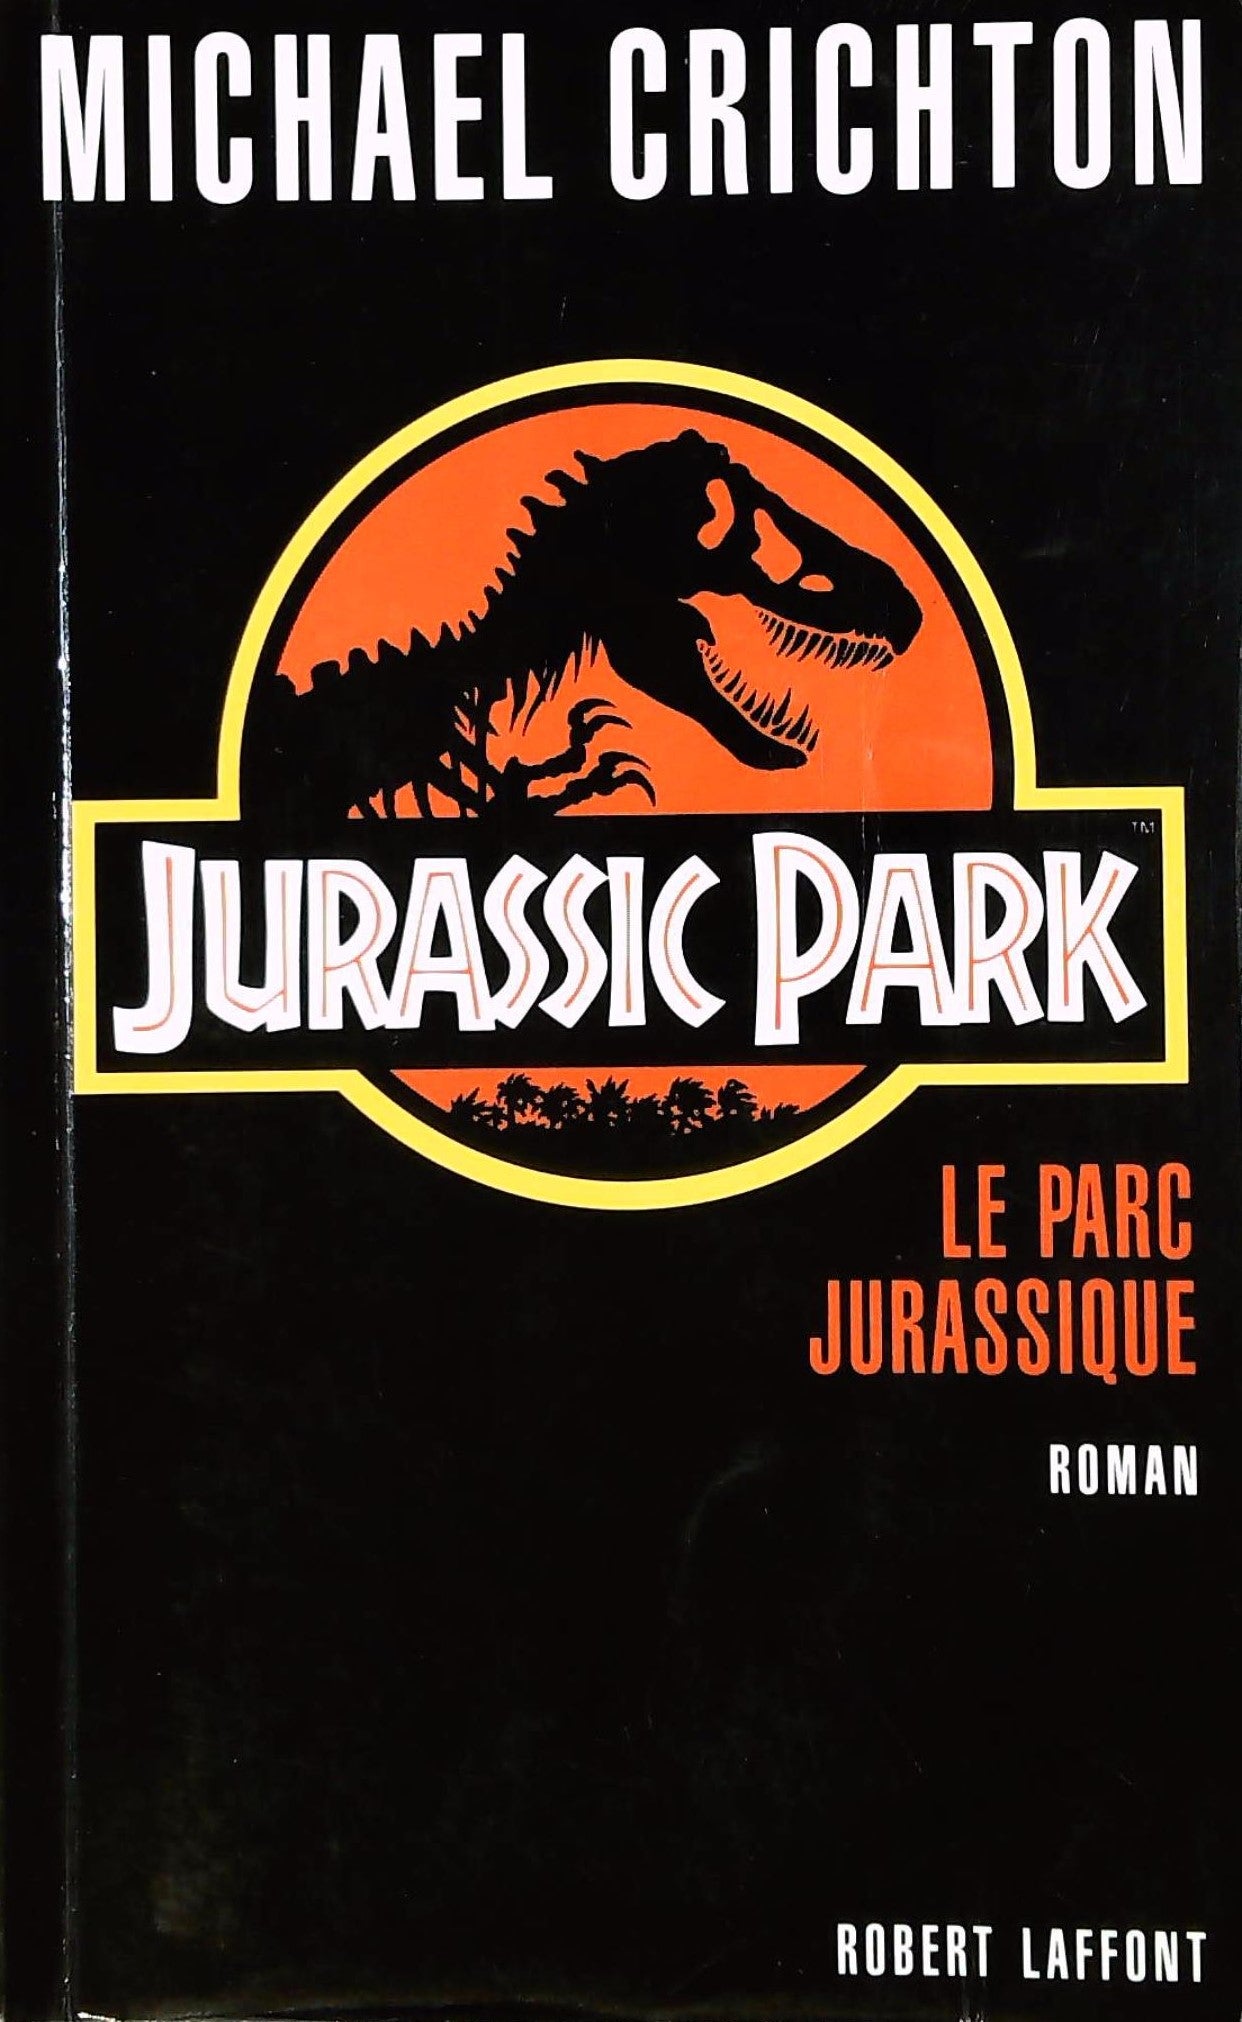 Livre ISBN 2221070224 Le Parc Jurassique (Michael Crichton)